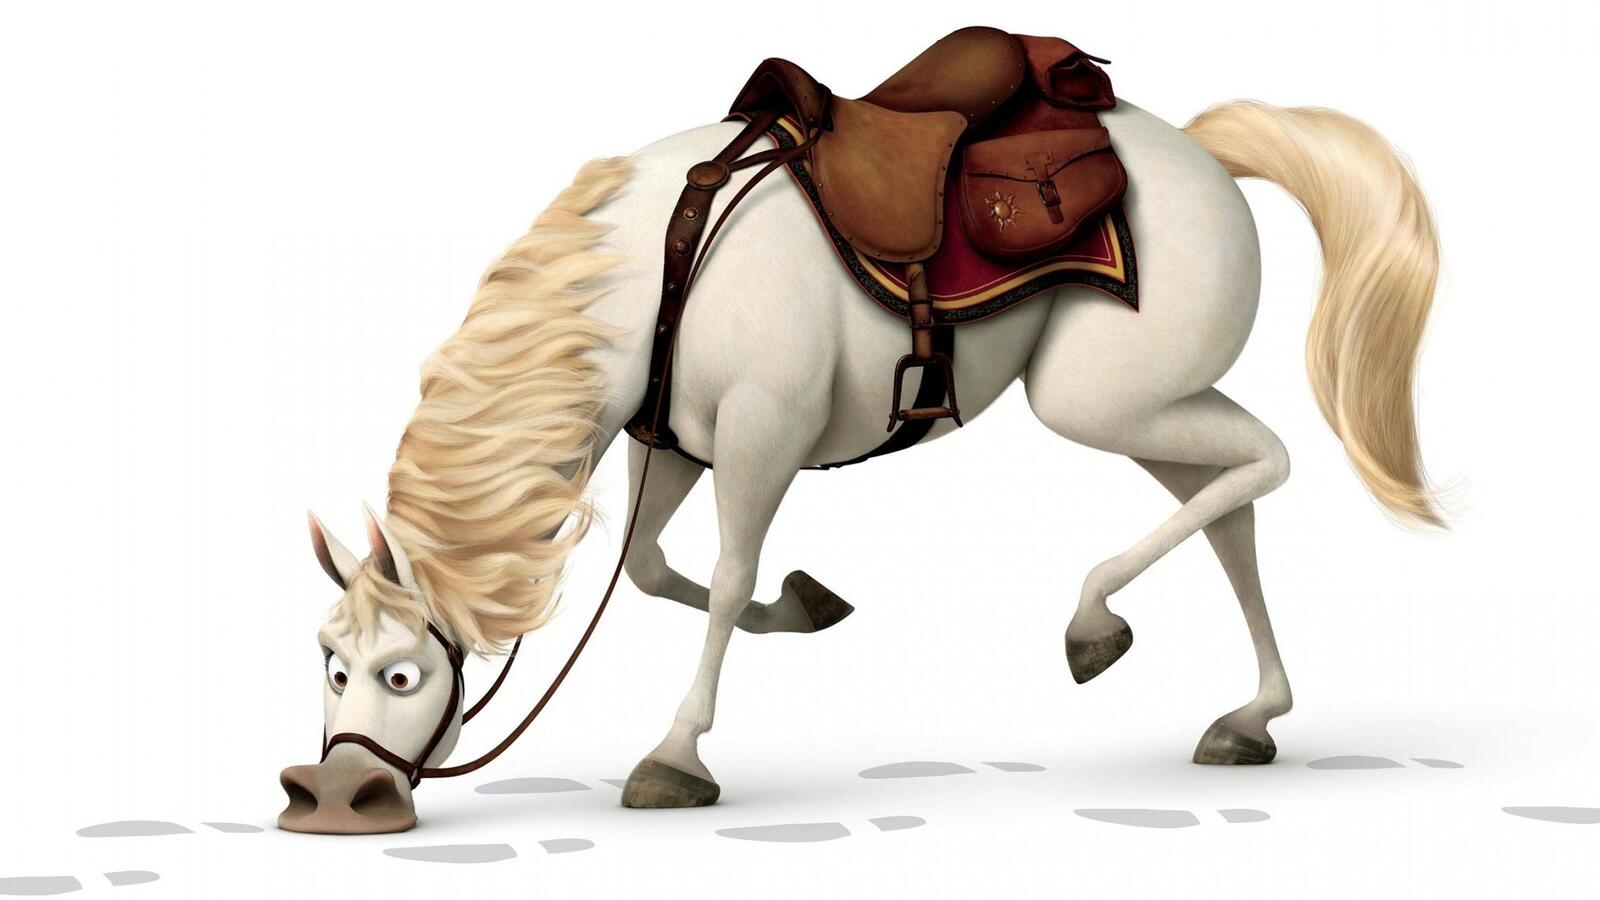 Бесплатное фото Лошадь из диснеевского мультфильма на белом фоне